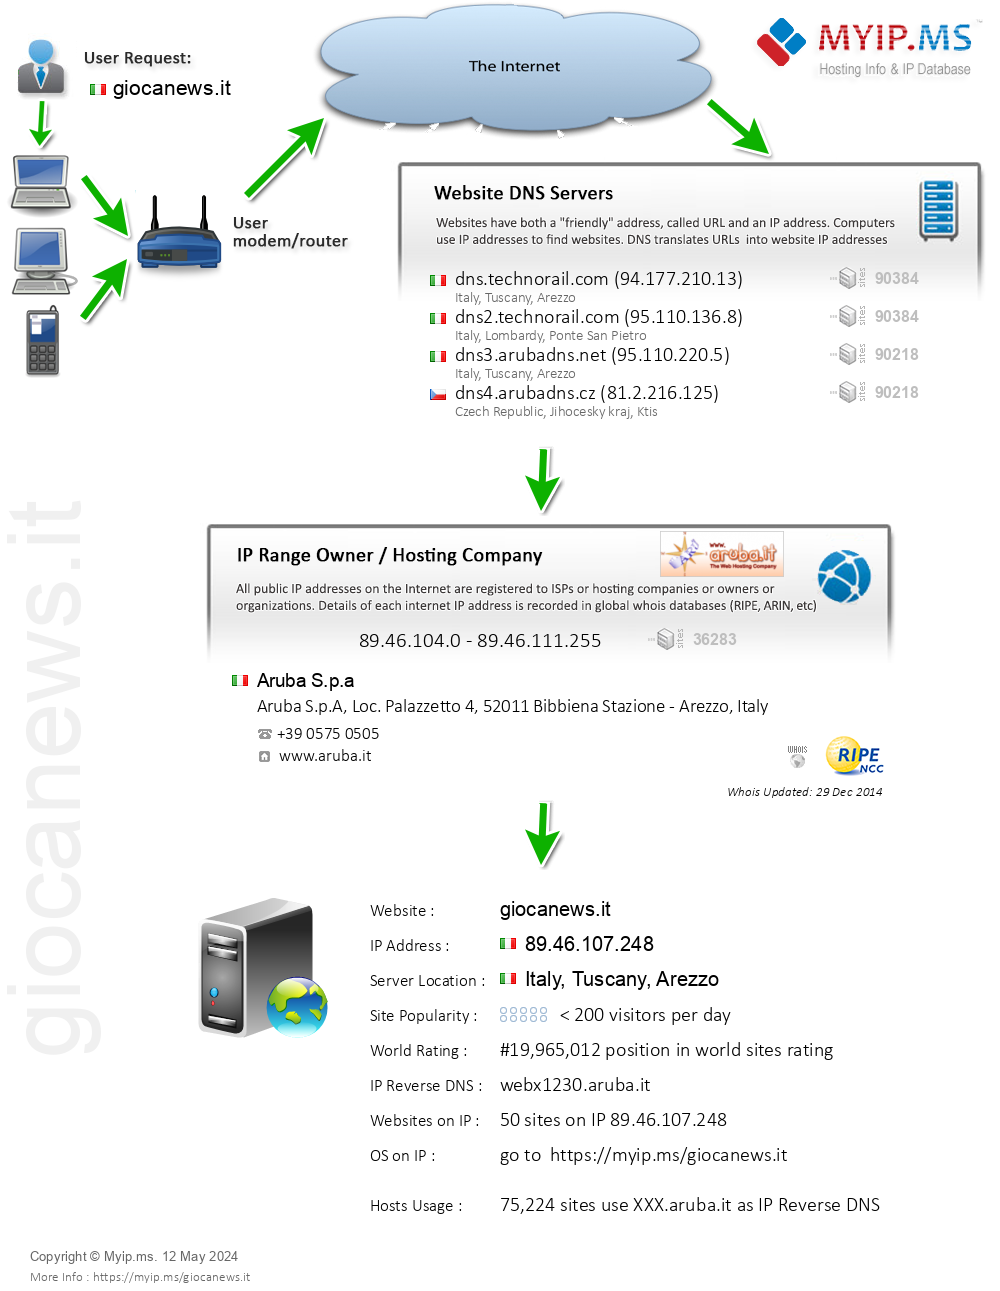 Giocanews.it - Website Hosting Visual IP Diagram